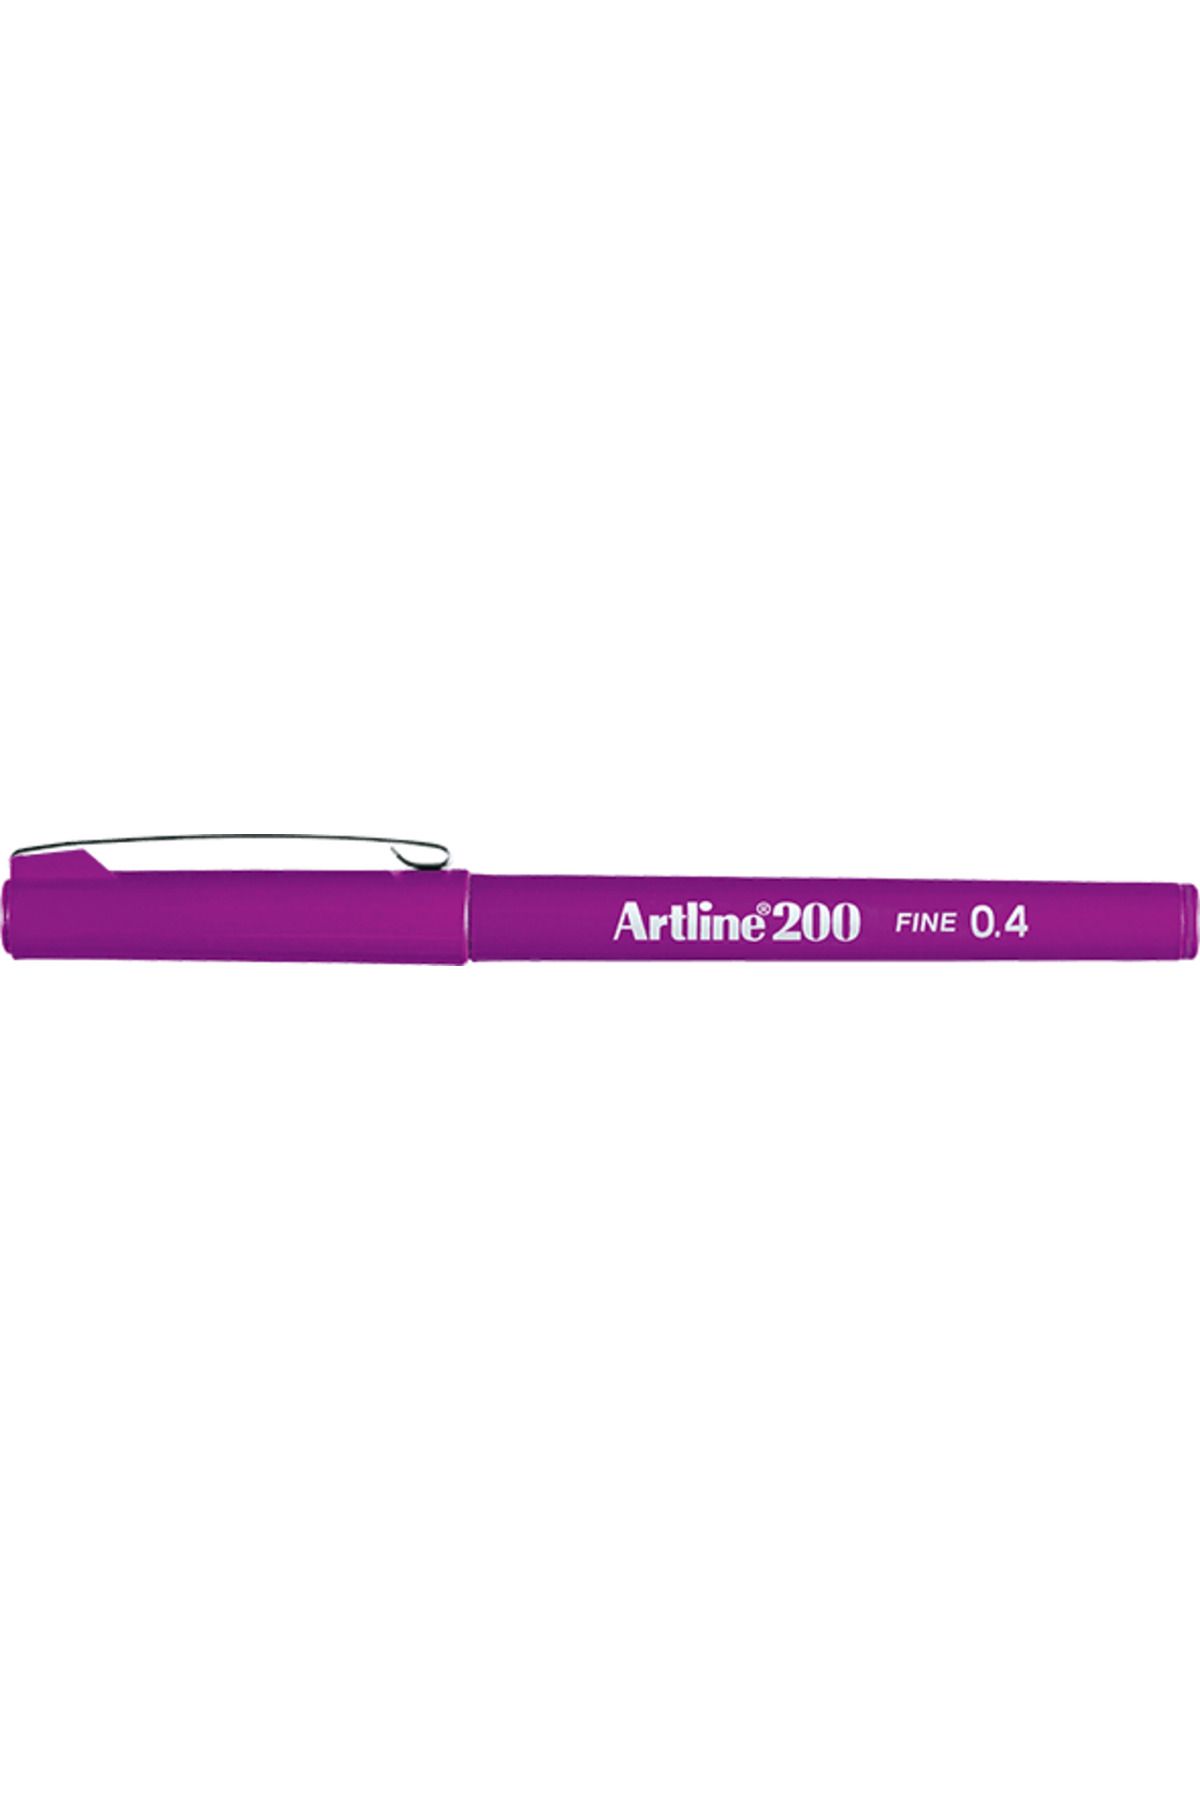 artline 200 Fineliner 0.4mm Keçe Uçlu Kalem Magenta